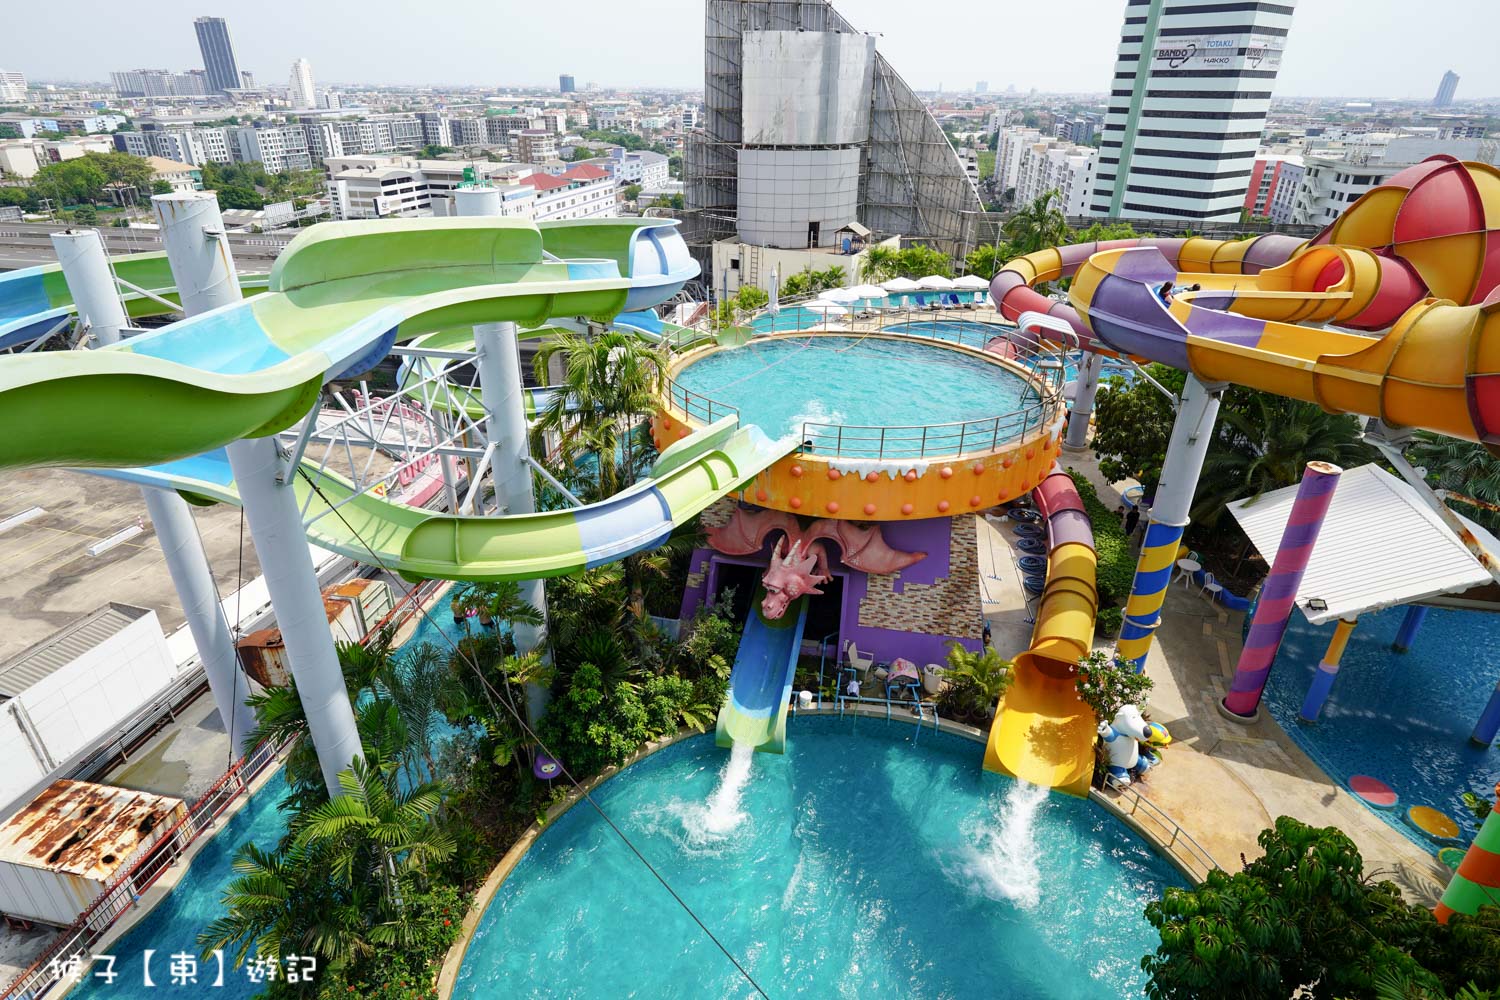 延伸閱讀：[泰國] Pororo Aqua Park Bangkok 曼谷高空水上樂園 優惠門票介紹 旋轉滑水道 消暑好玩 適合全家大小一起玩